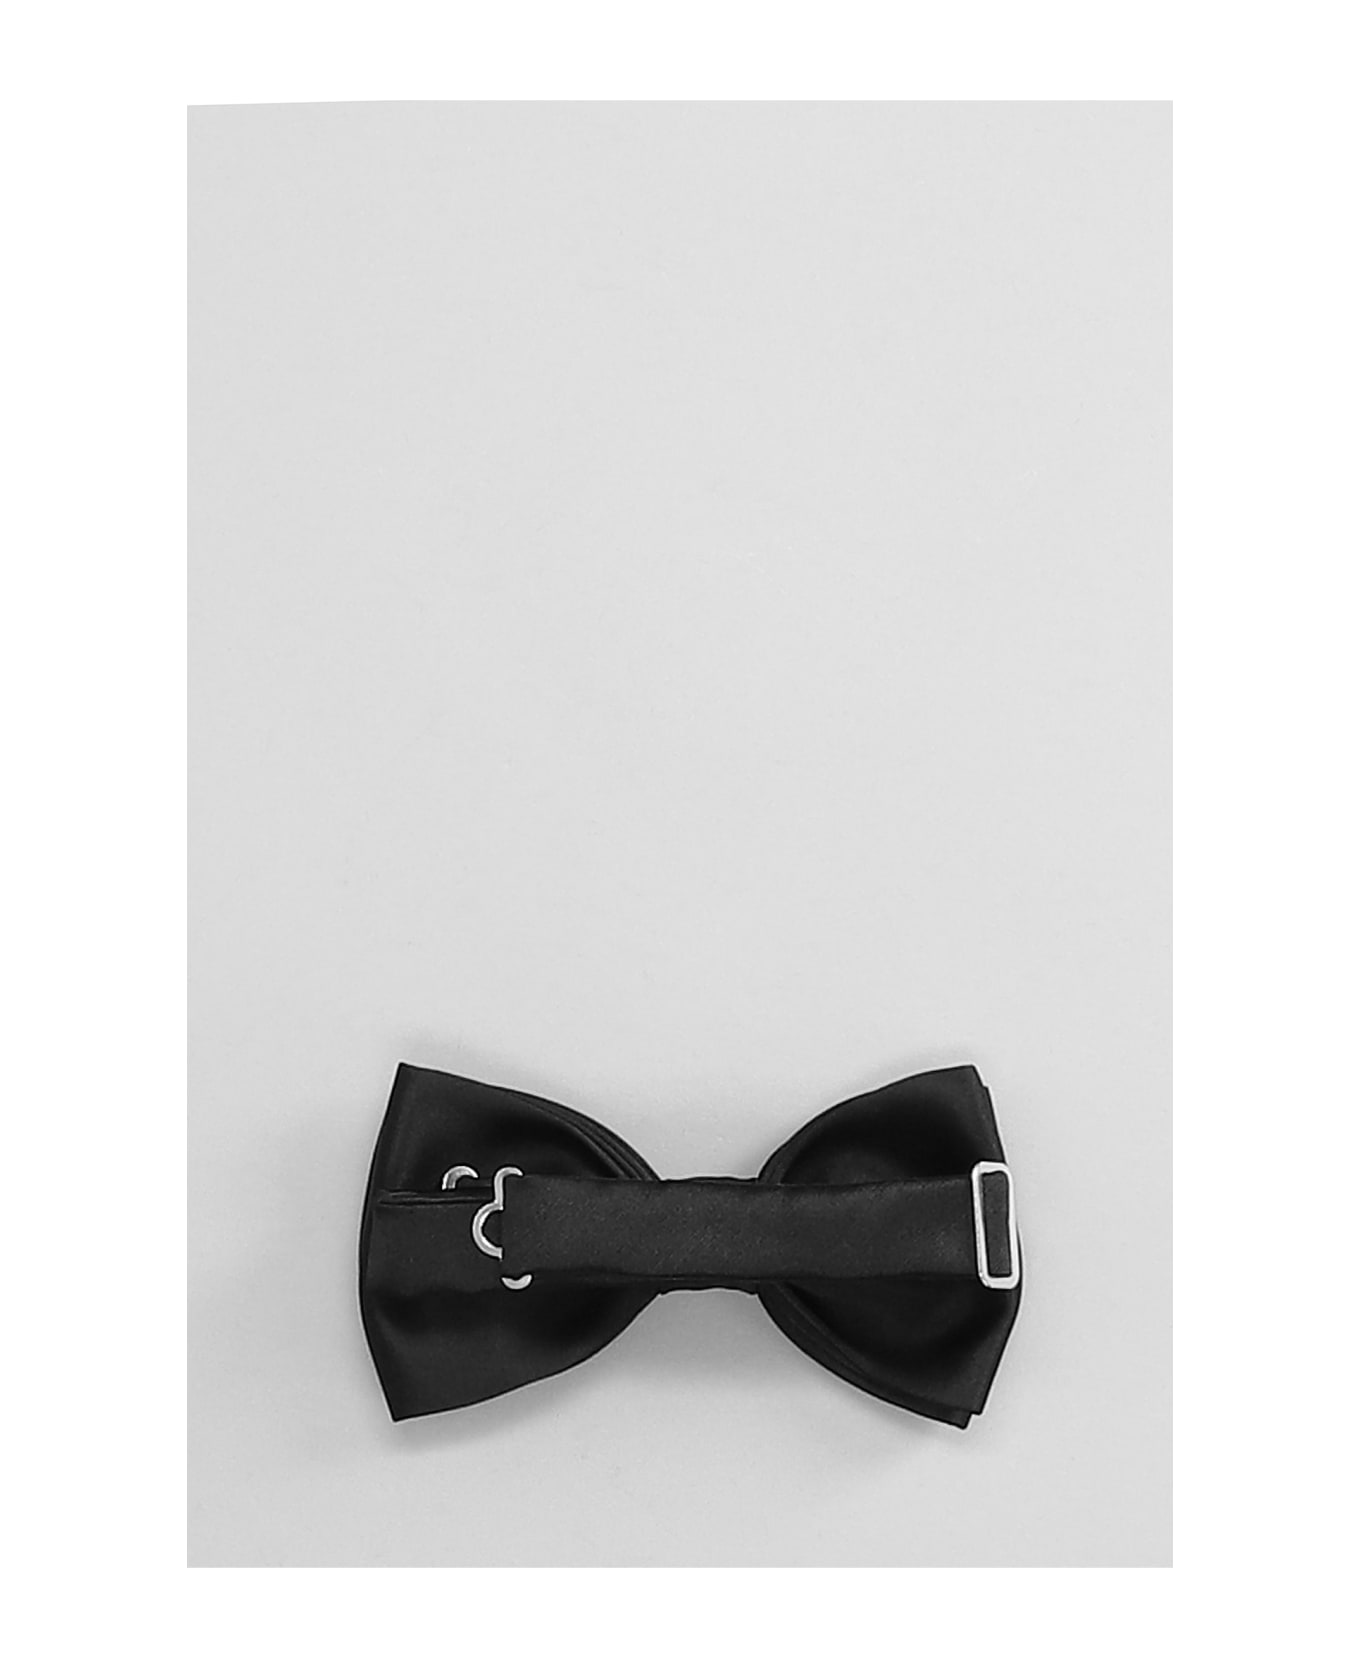 Tagliatore Tie In Black Polyester - Blue